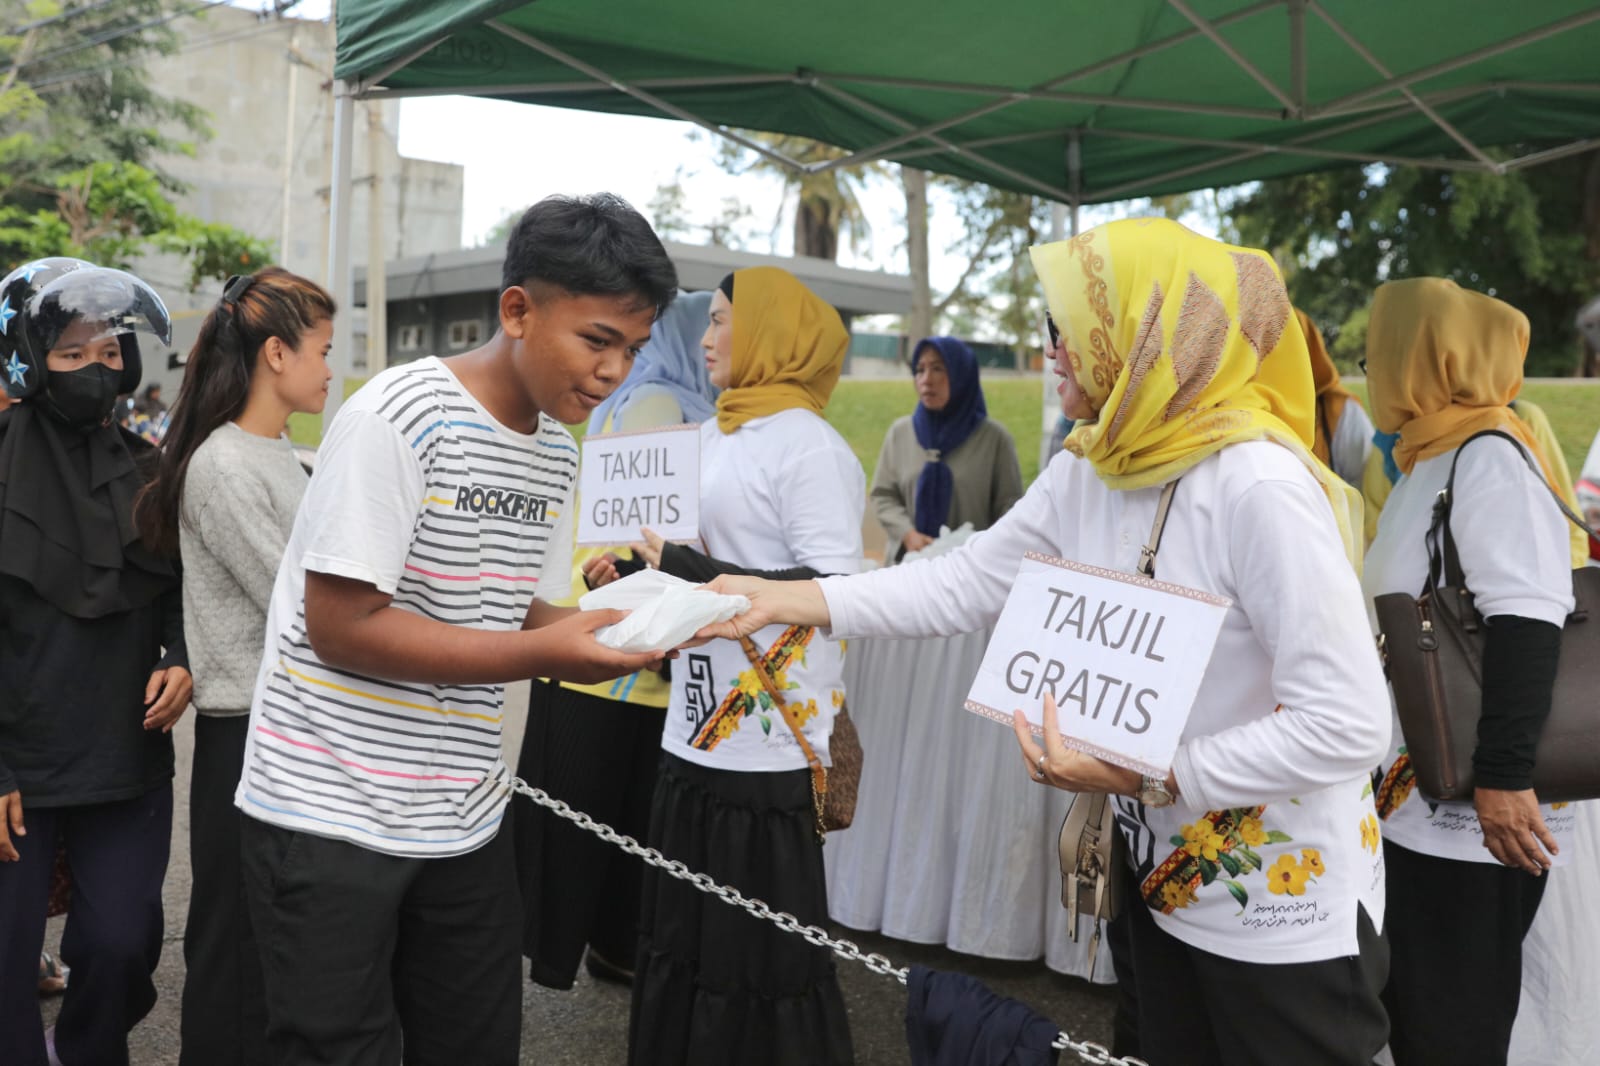 Ibu Riana Sari Arinal dan Jajaran LKKS Provinsi Lampung Bagikan Takjil Gratis kepada Masyarakat di Halaman Parkir Mahan Agung